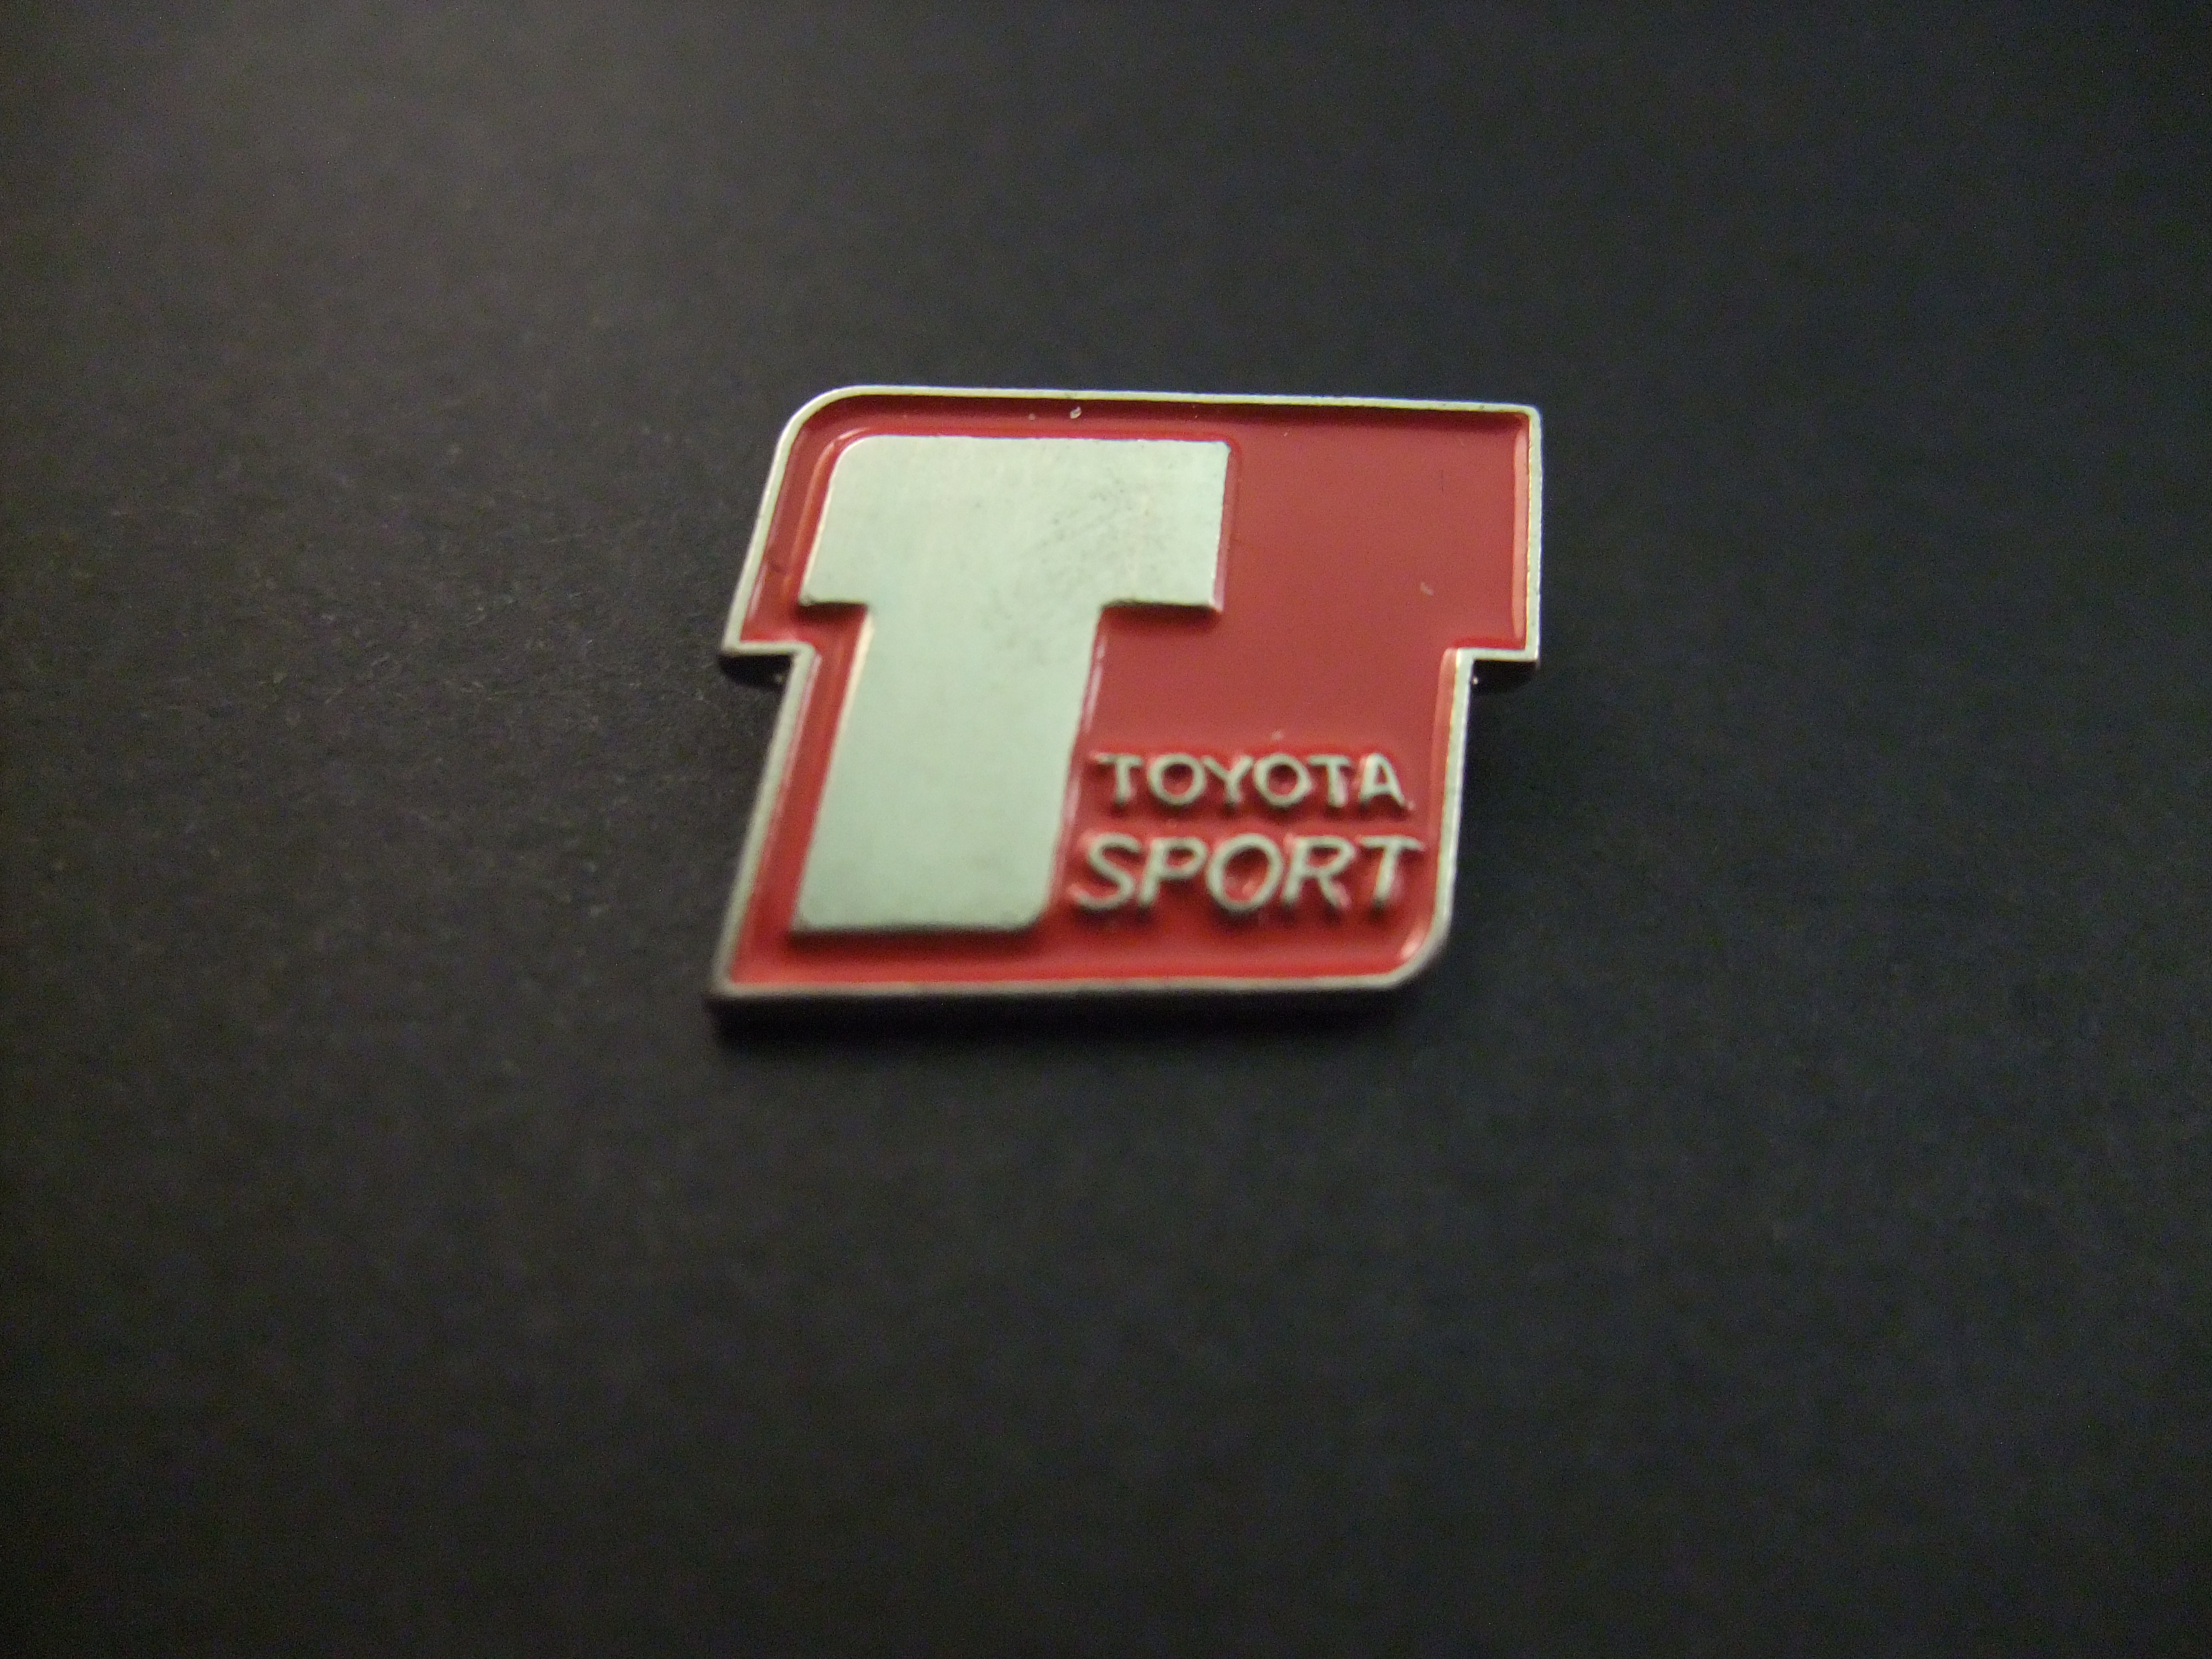 Toyota sport , rood-zilverkleurig logo